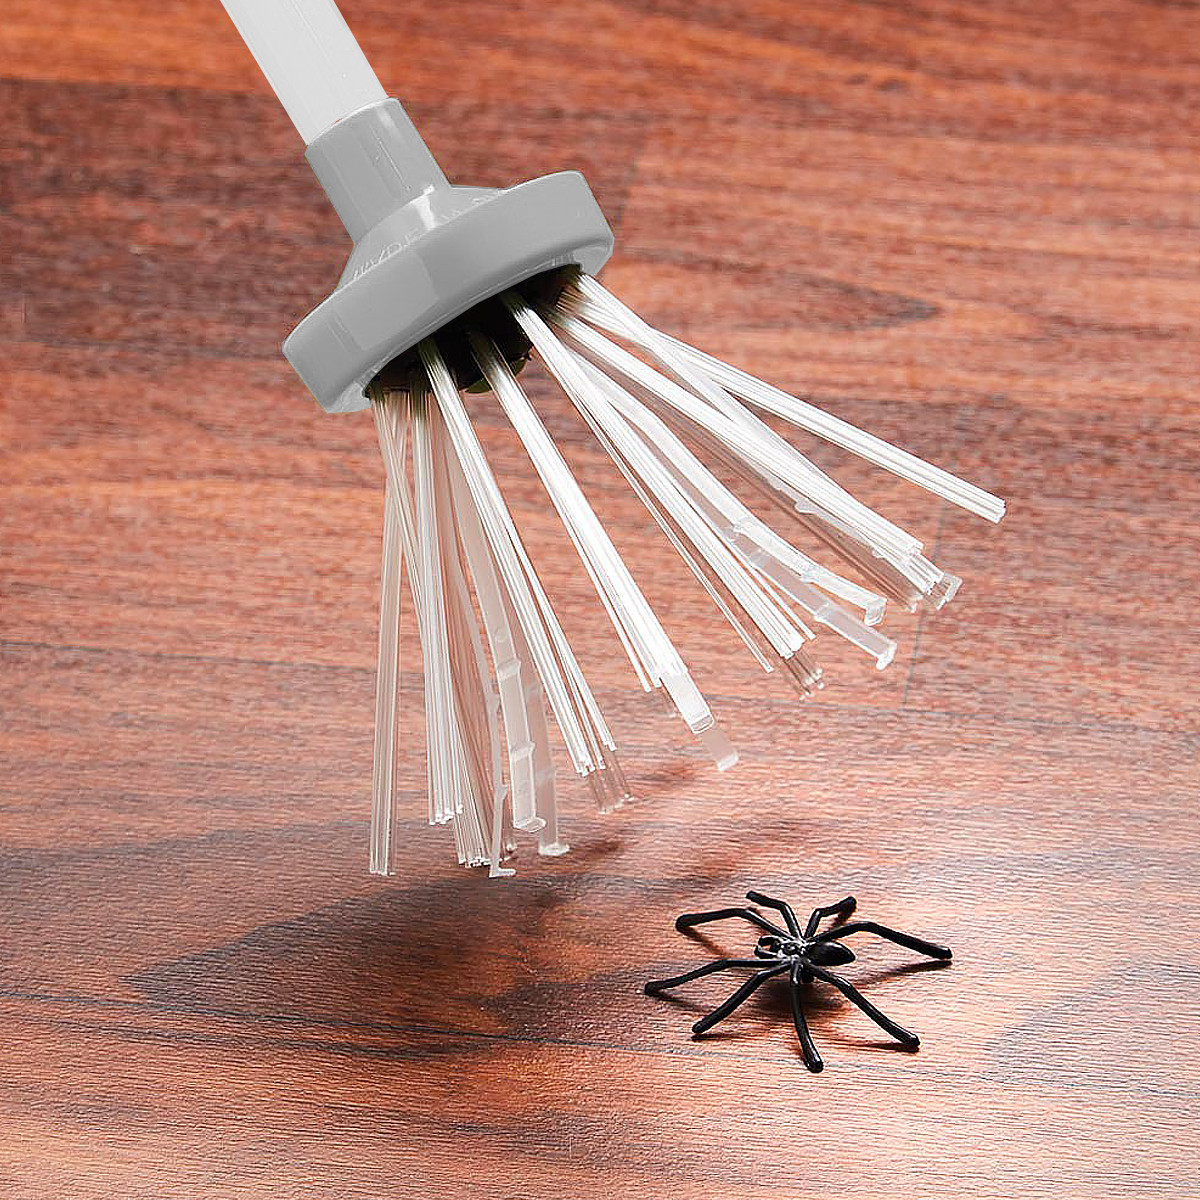 Puissant attrape-insectes, attrape-araignées et insectes avec lumière LED,  usb rechargeable pour puanteur, coléoptère